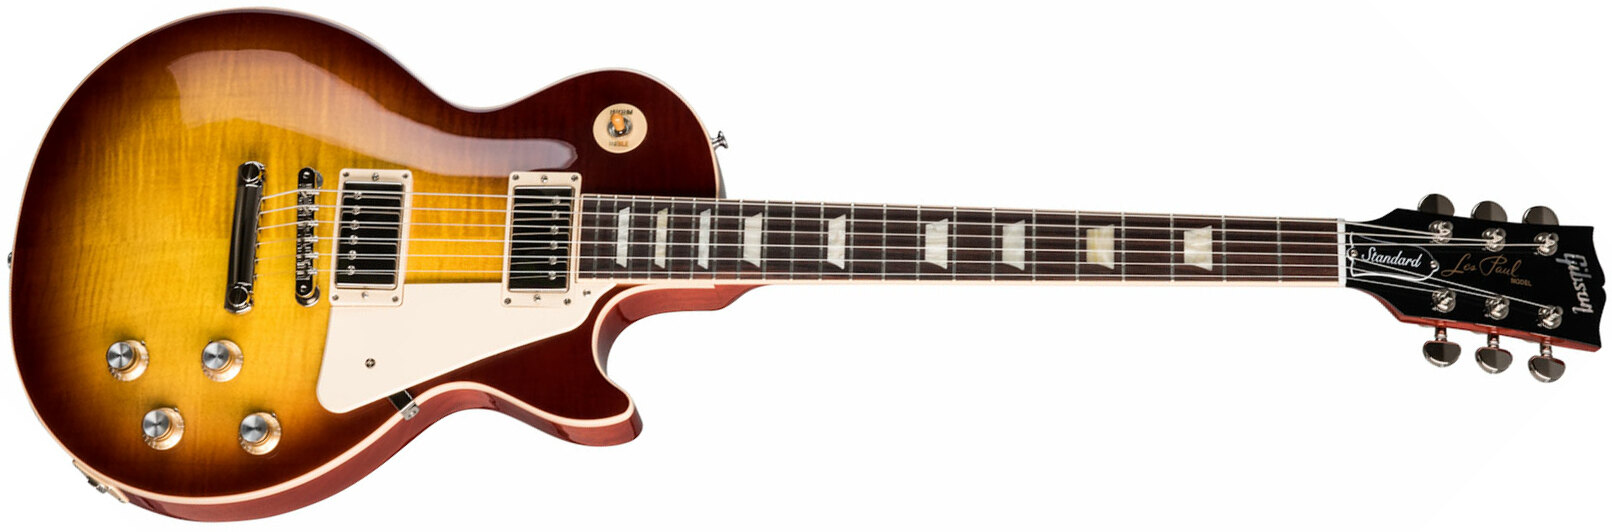 Gibson Les Paul Standard 60s 2h Ht Rw - Iced Tea - Enkel gesneden elektrische gitaar - Main picture